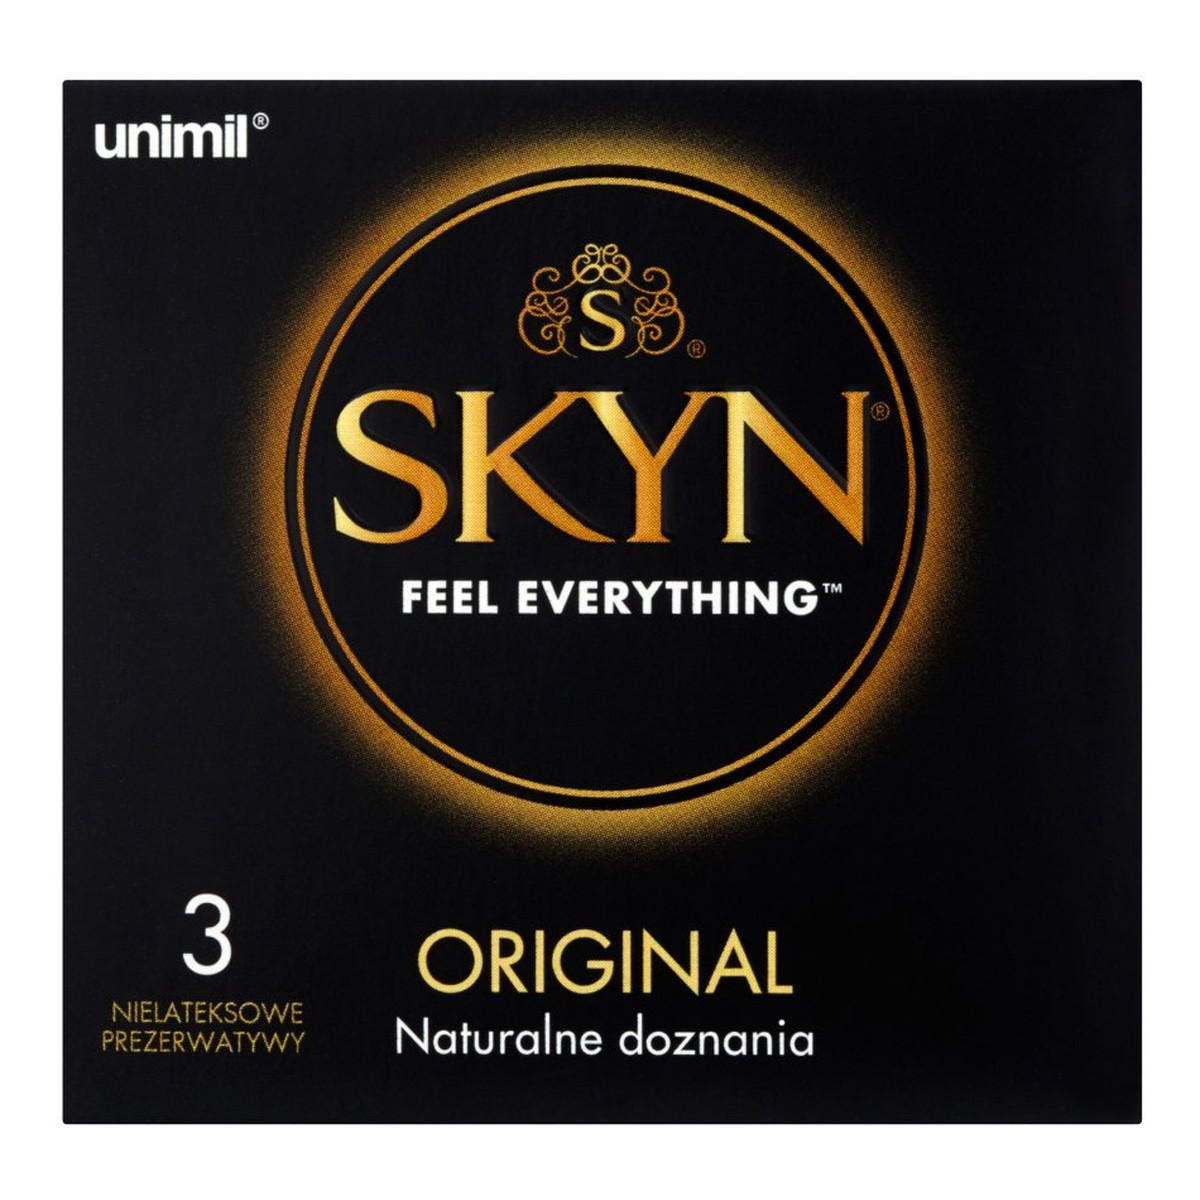 Unimil Skyn Original Nielateksowe prezerwatywy 3szt